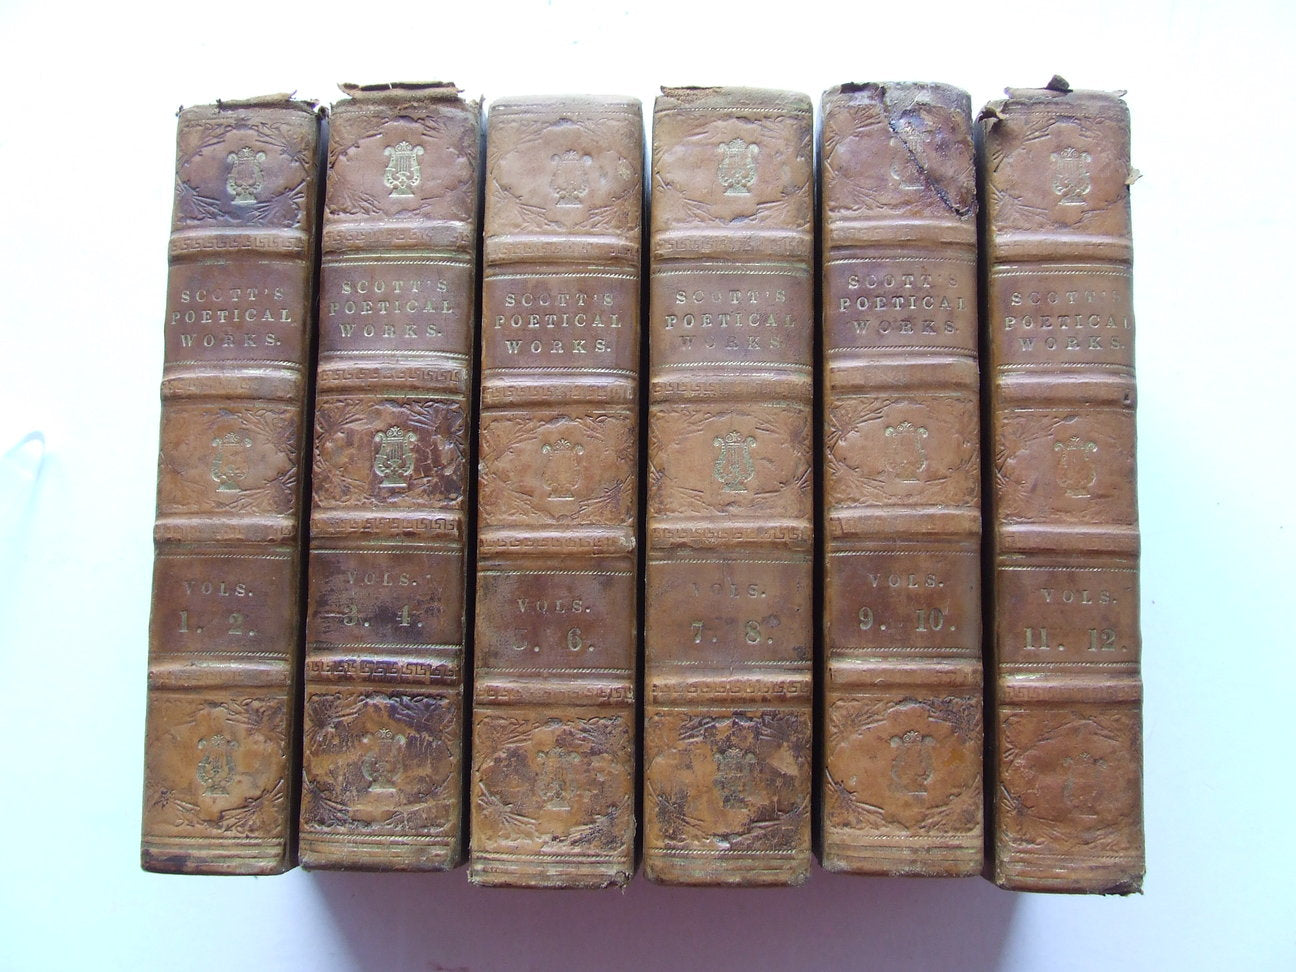 The Poetical Works of Walter Scott, Esq. in twelve volumes